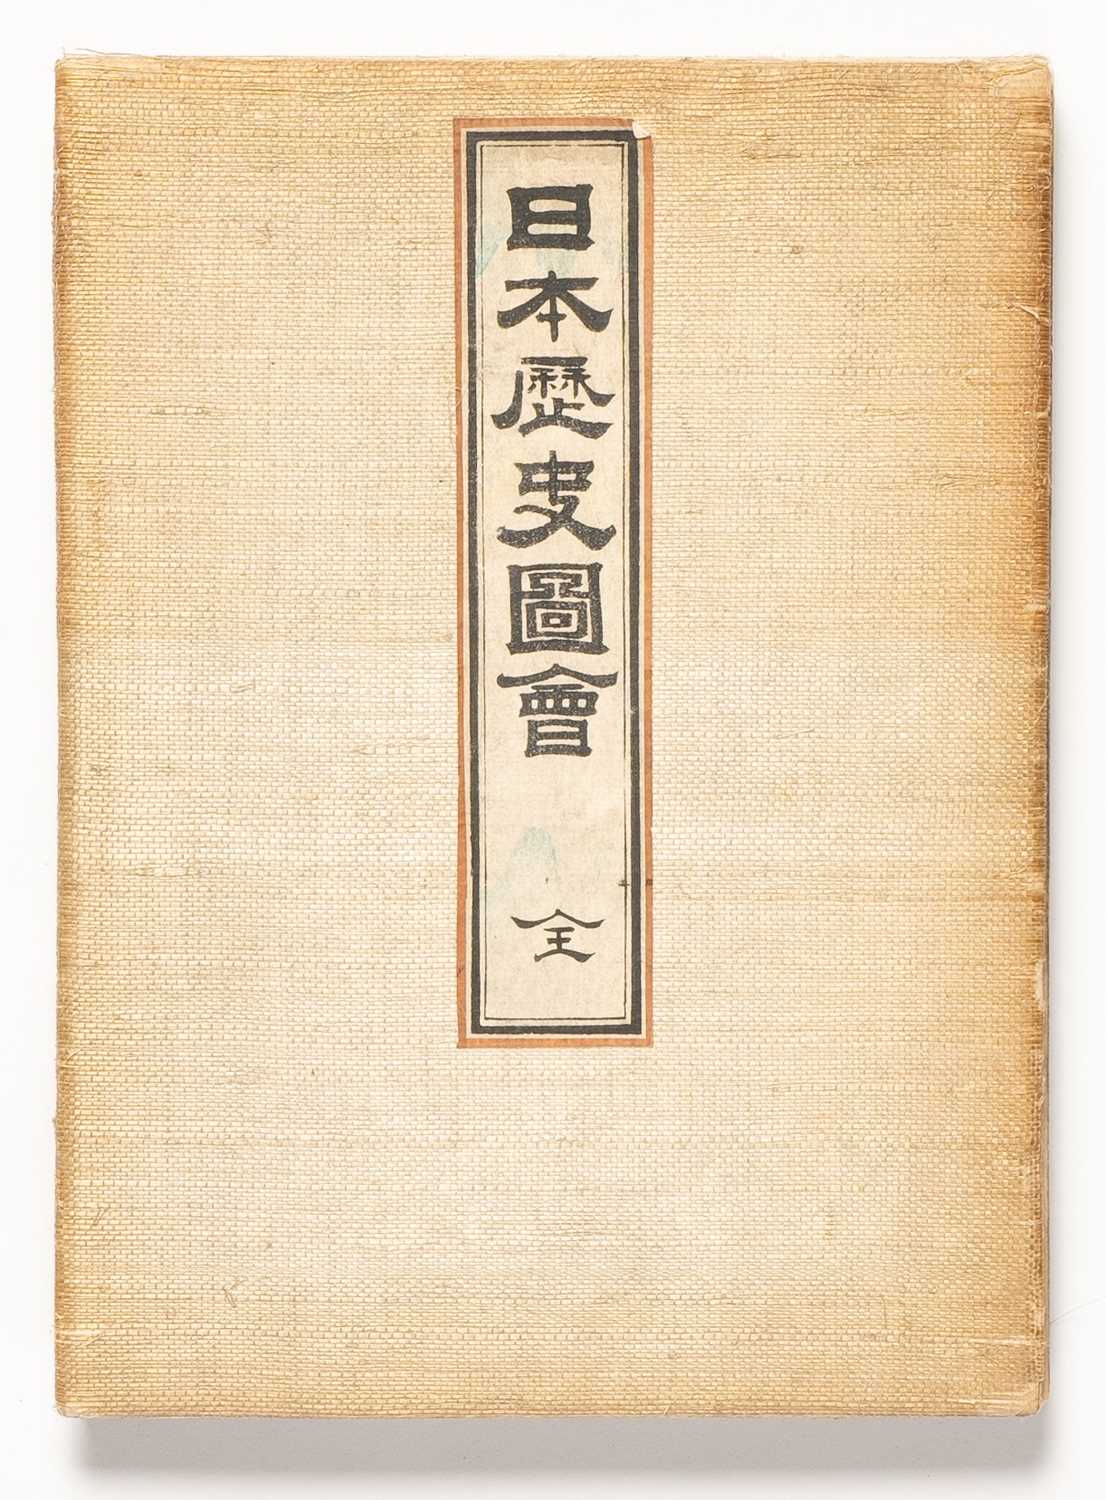 YOSHU / TOYOHARA CHIKANOBU (1838-1912) HEIKE MONOGATARI (HEROES AND HEROINES IN THE TALE OF THE